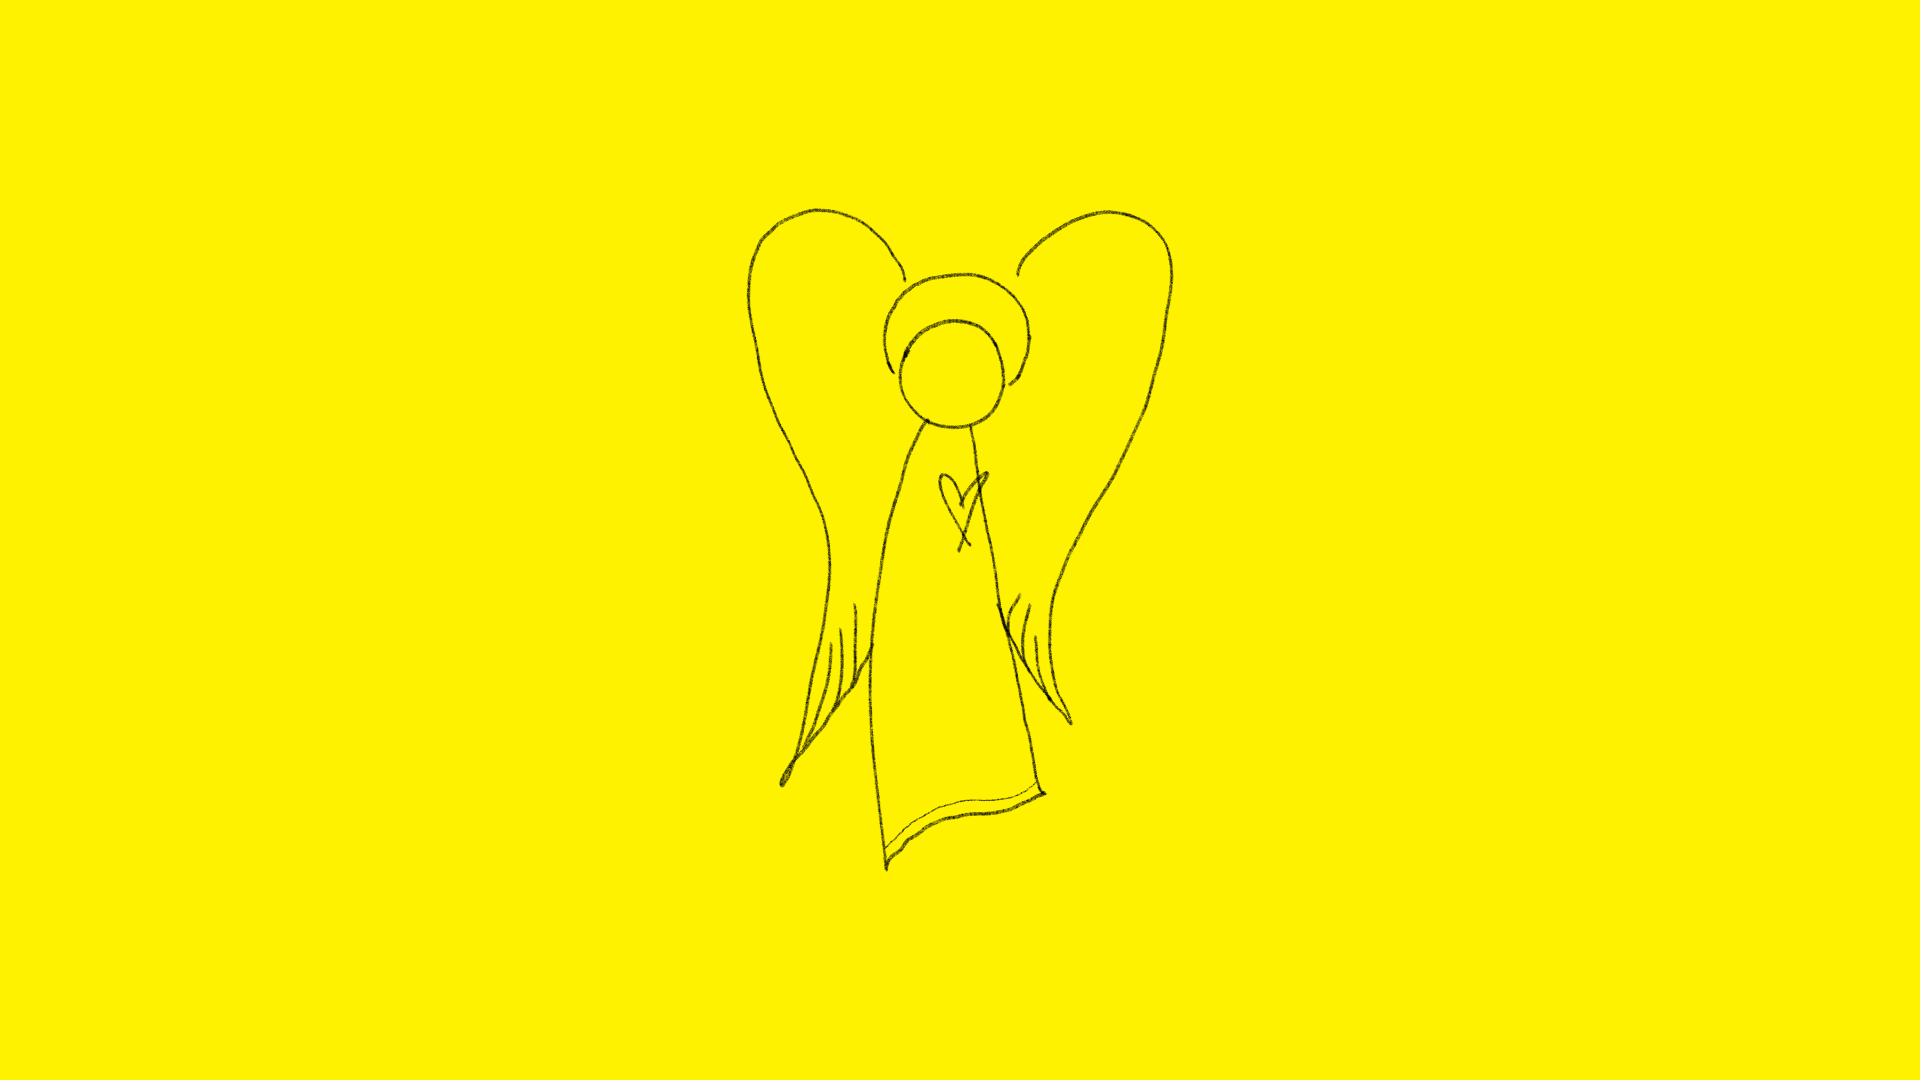 Czarny szkic anioła z sercem na żółtym tle